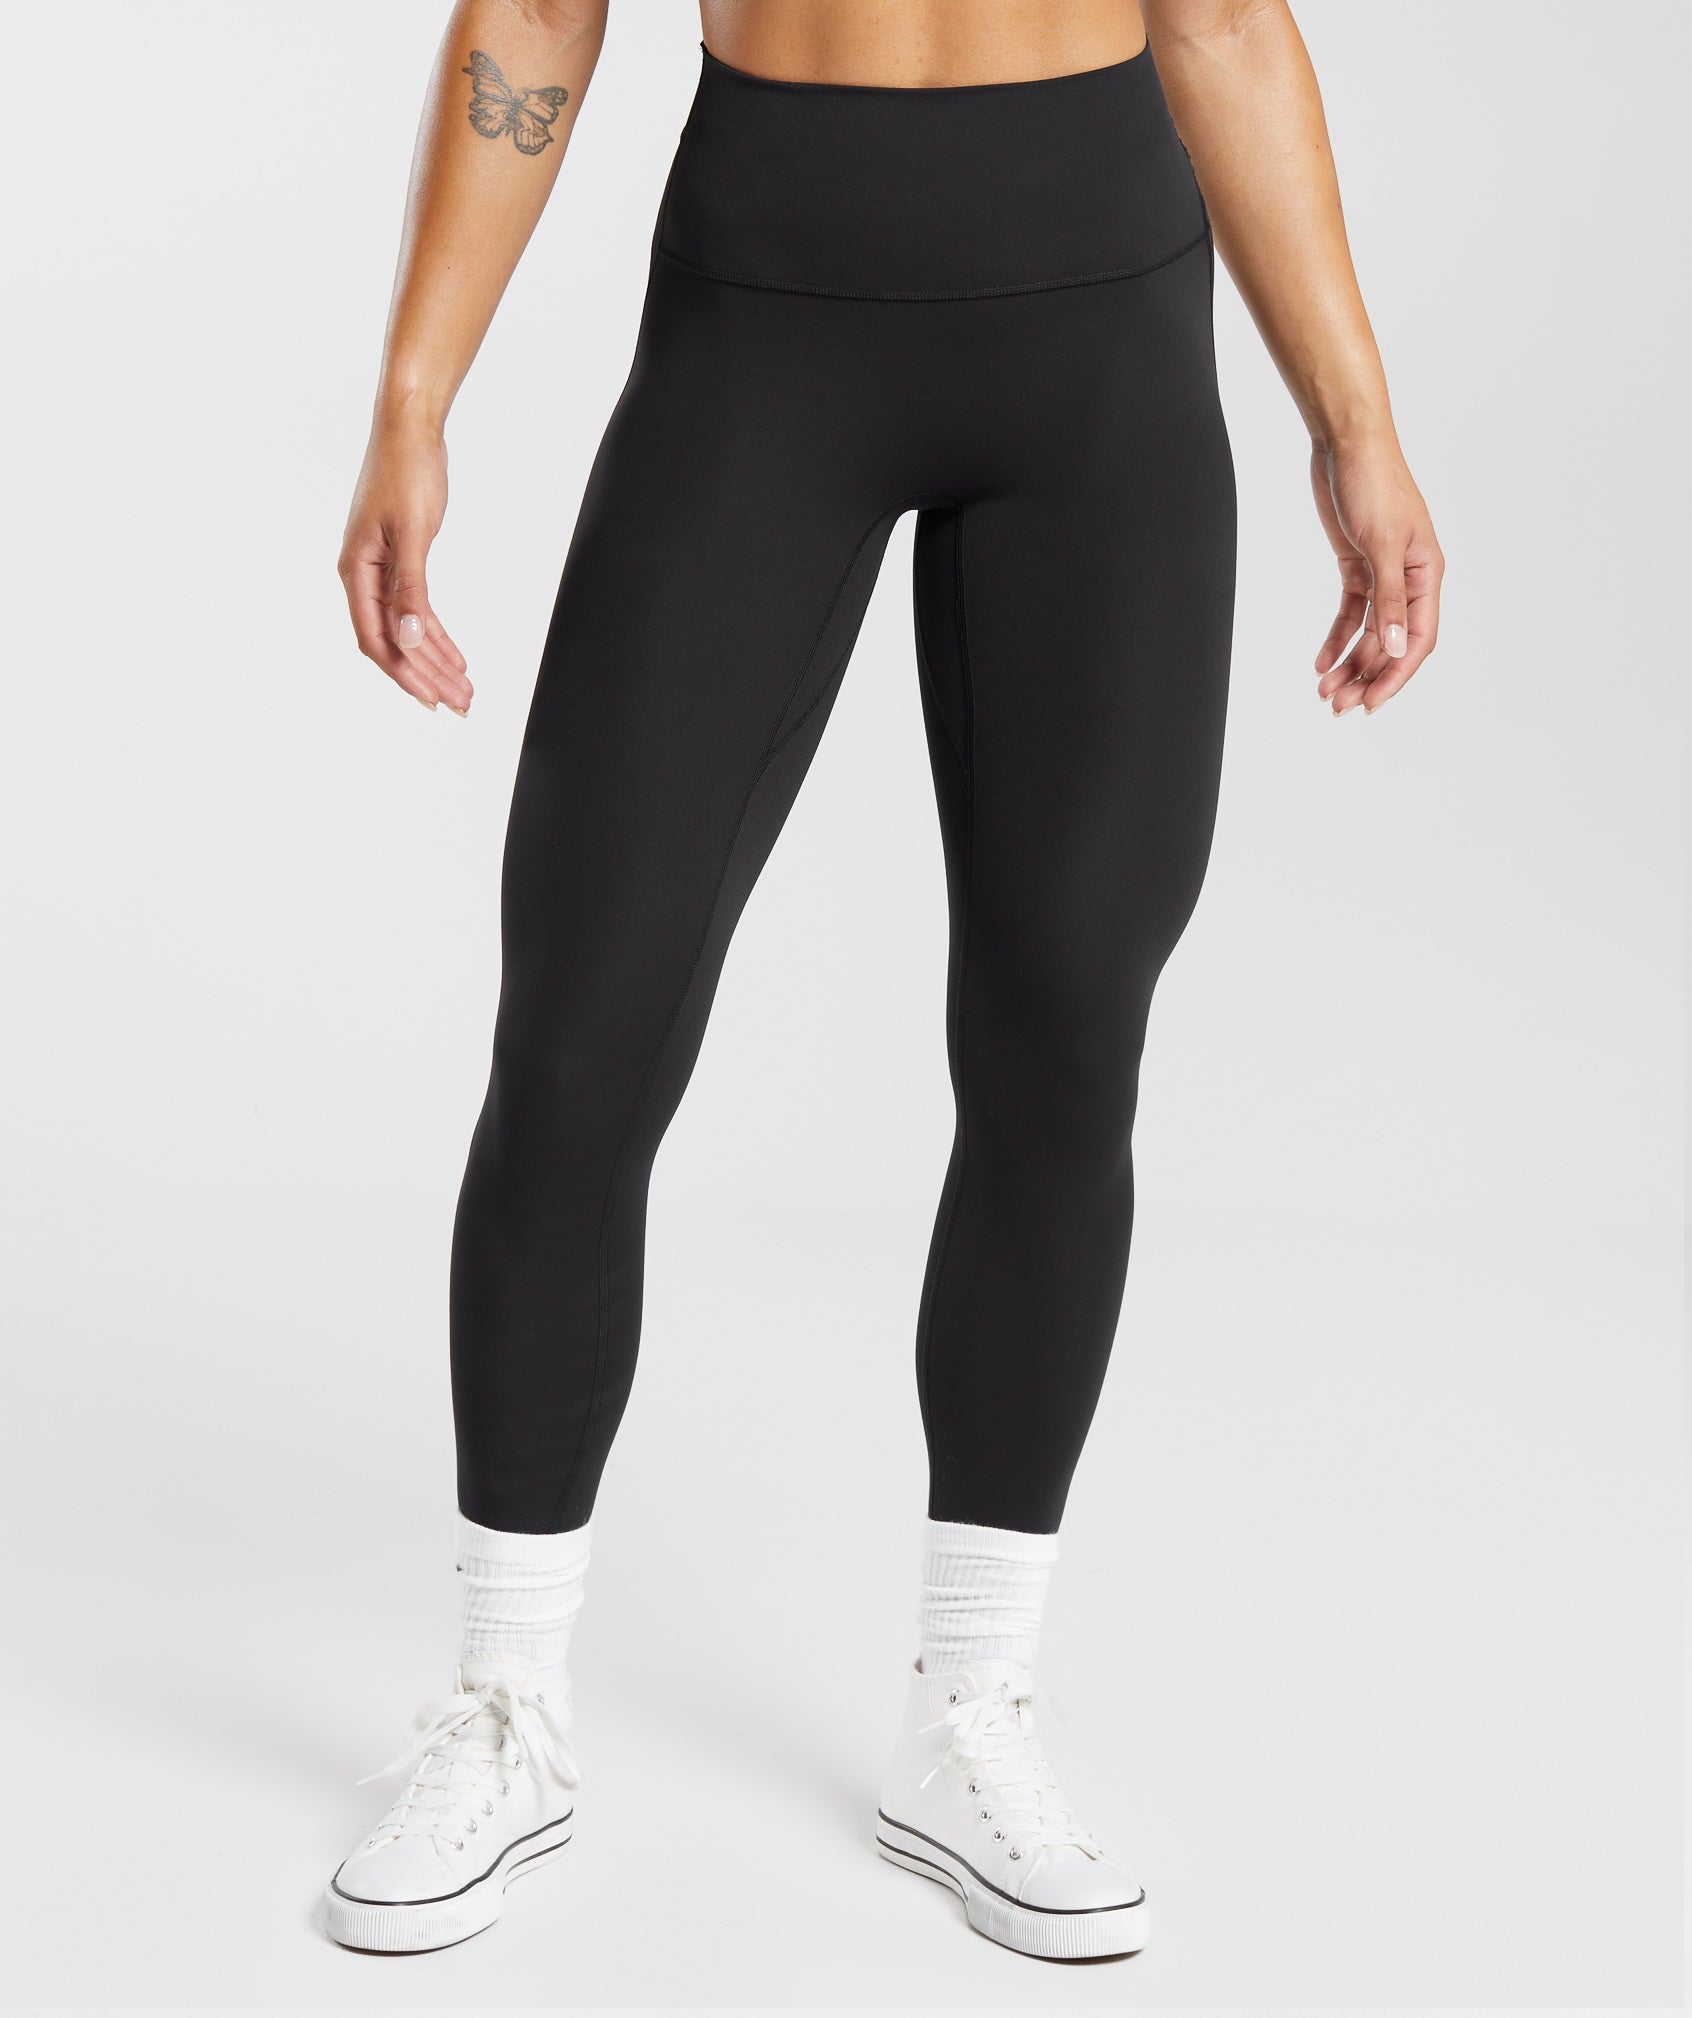 Blis Workout Leggings For Women Fold Over Maternity Leggings Yoga Pants For  Women Capri Length 3 Packs Available Black / Charcoal 3x : Target